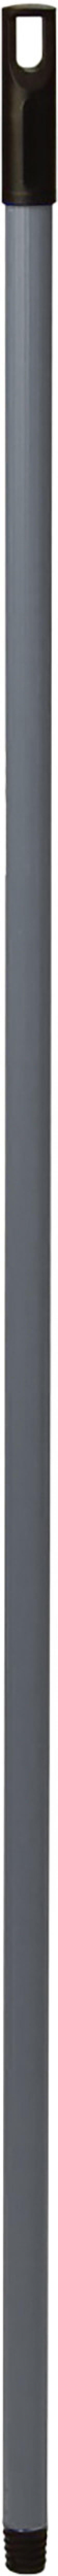 Черенок универсальный 110 см, диаметр 24 мм